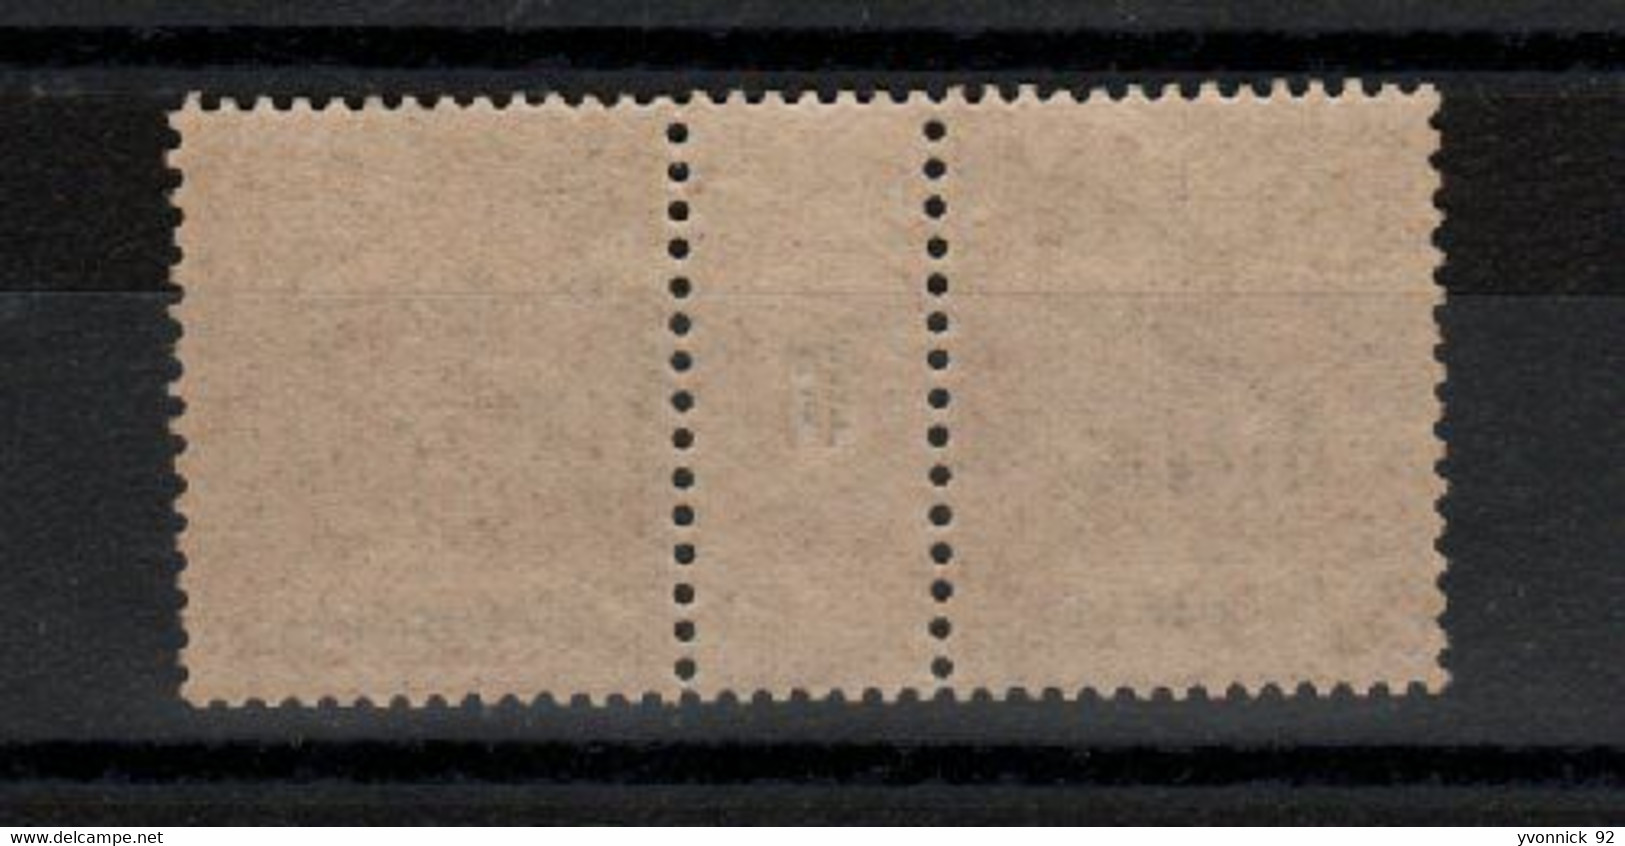 Moheli  _ 1Millésimes 1906 N°8  Neuf - Unused Stamps